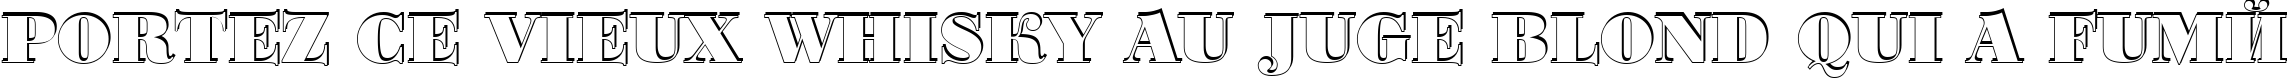 Пример написания шрифтом a_BodoniOrtoTitulSh Black текста на французском